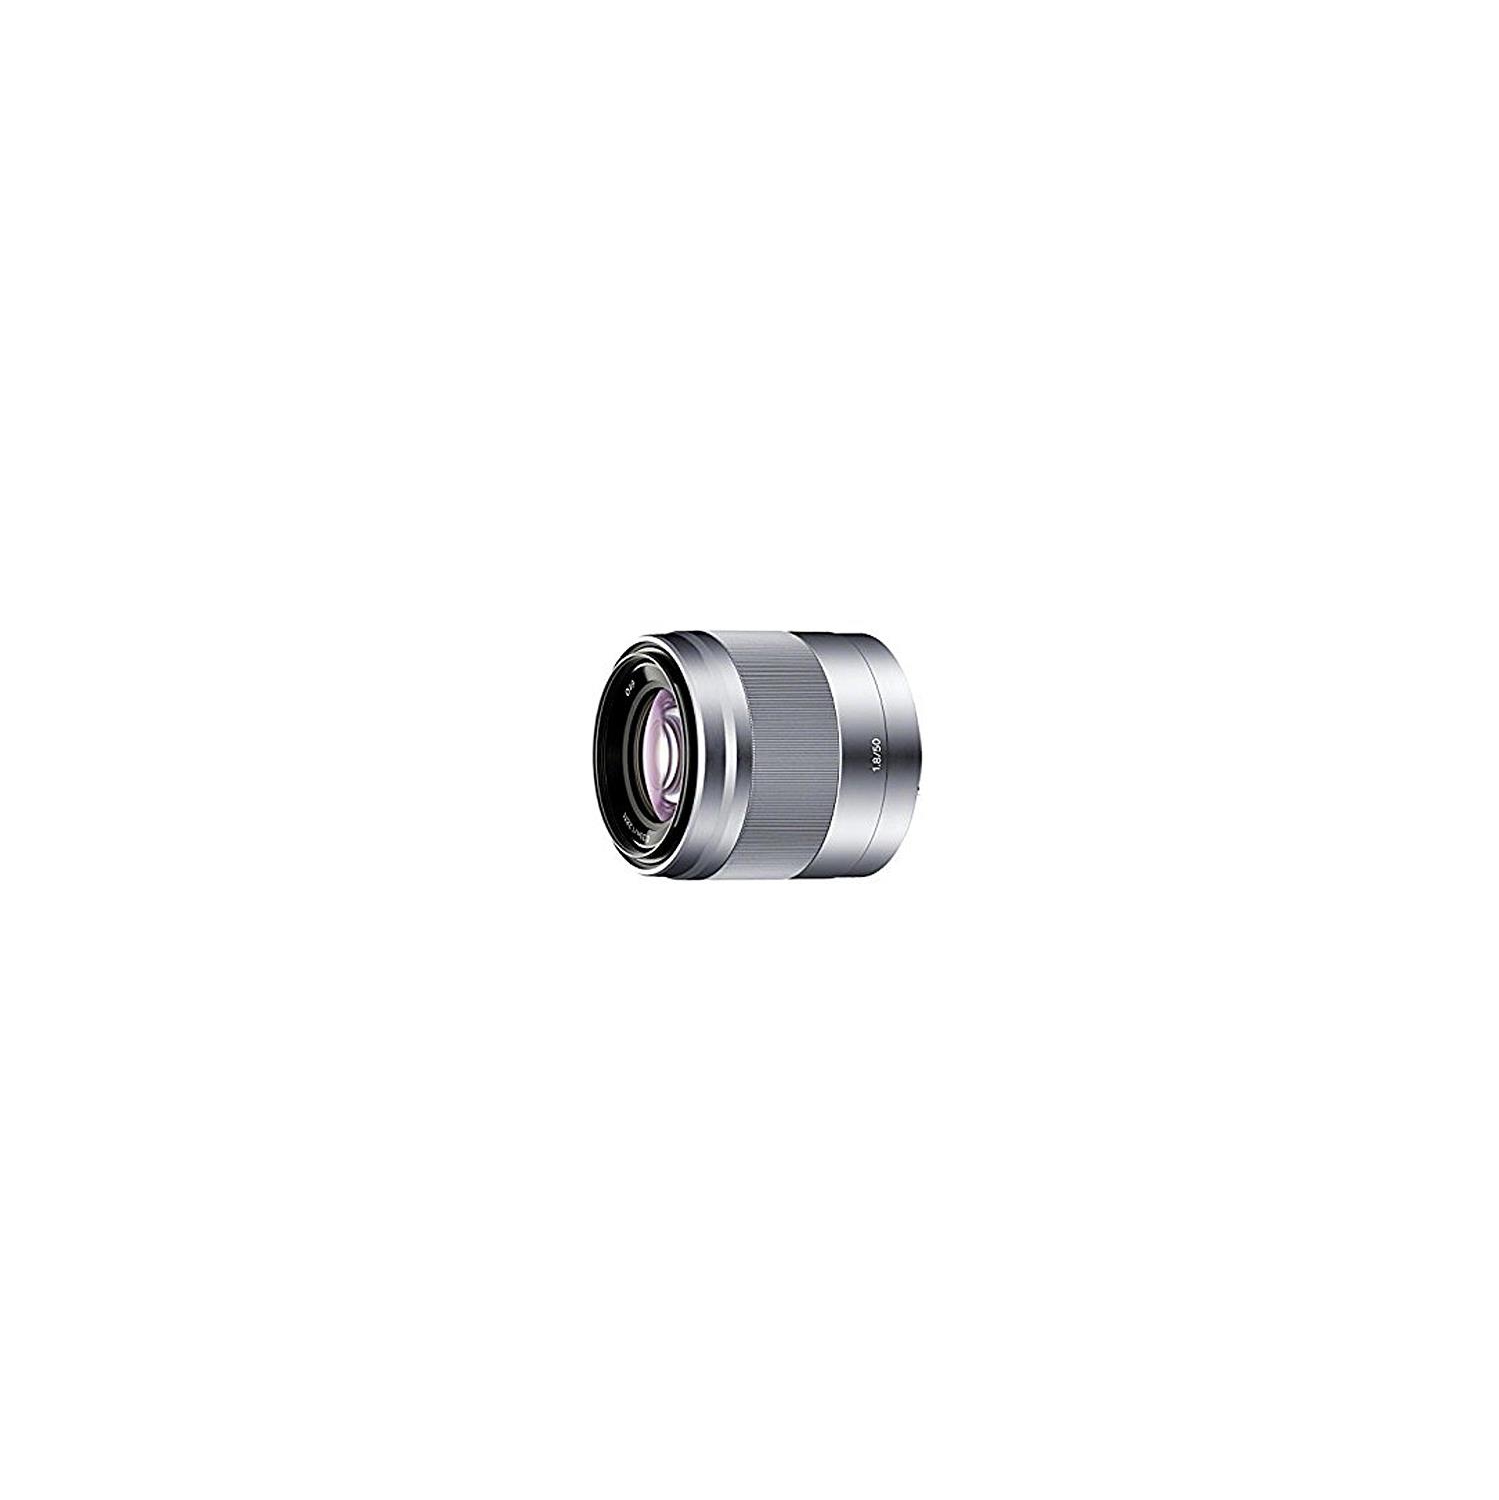 Sony SEL-50F18 50 mm f/1.8 Medium Telephoto Lens for E-mount